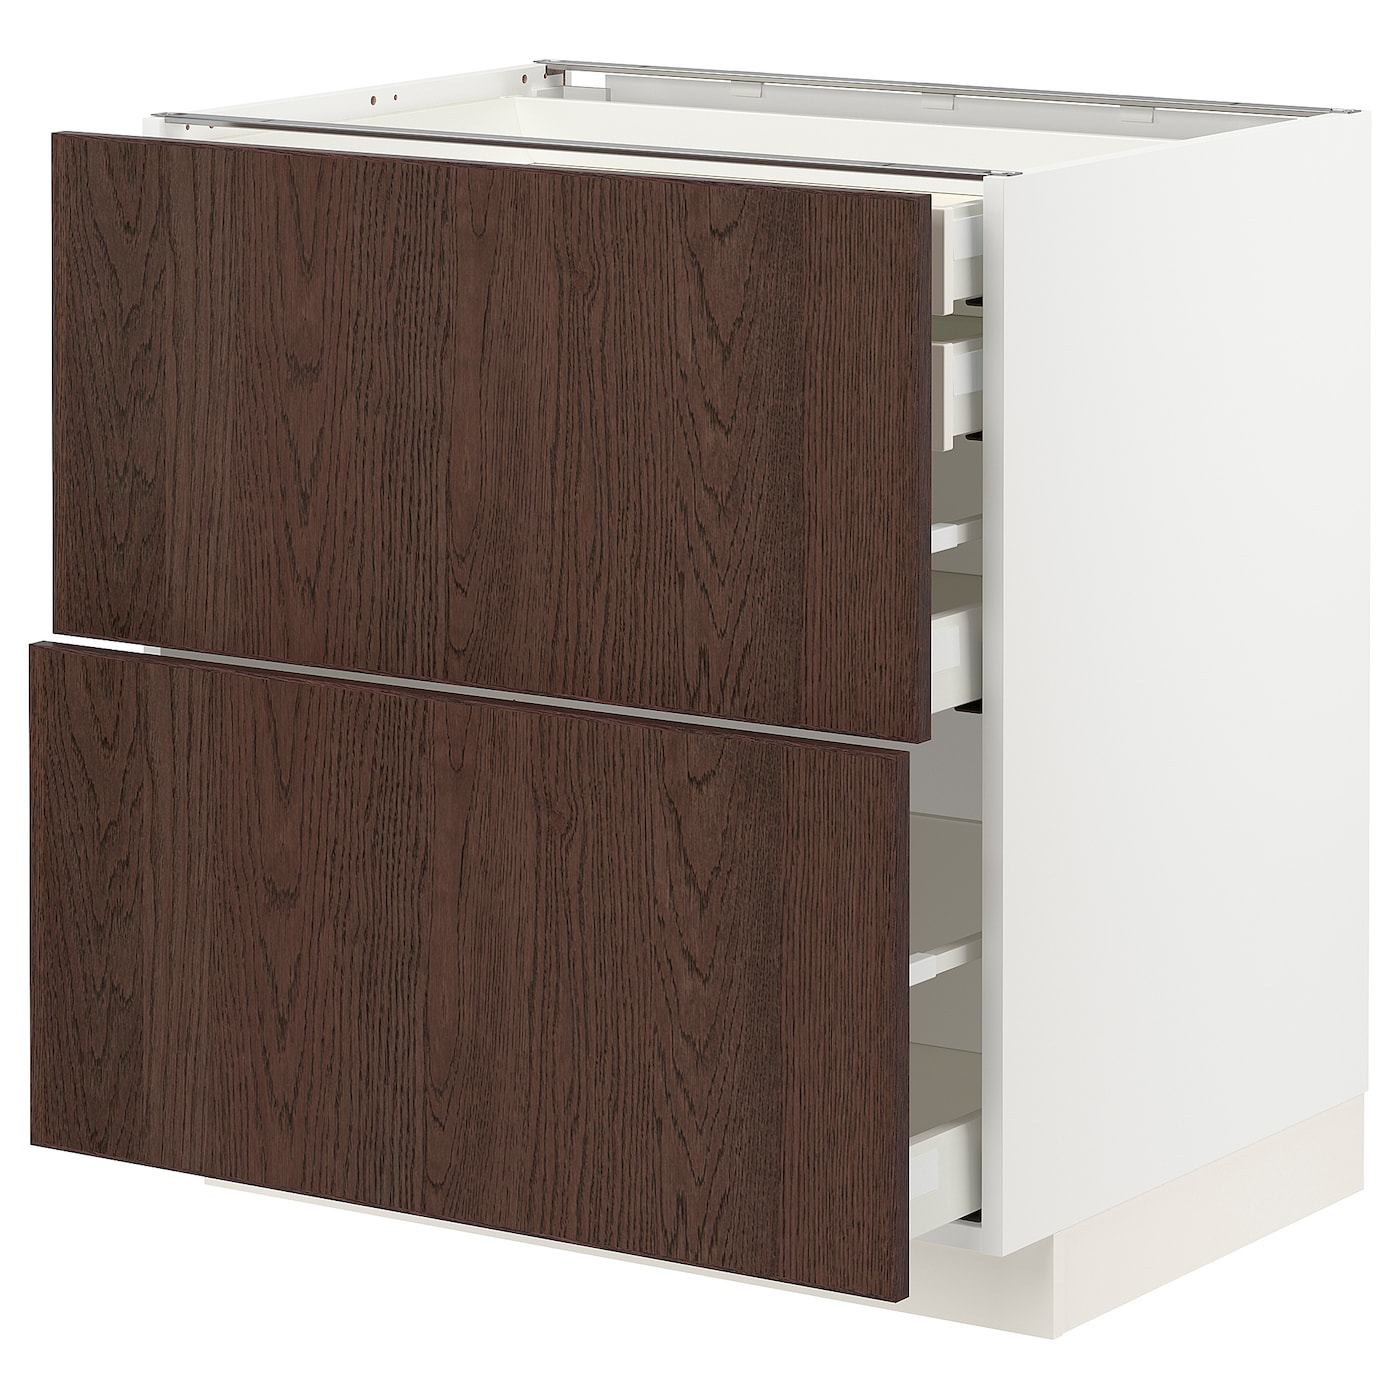 Напольный кухонный шкаф  - IKEA METOD MAXIMERA, 88x61,6x80см, белый/коричневый, МЕТОД МАКСИМЕРА ИКЕА